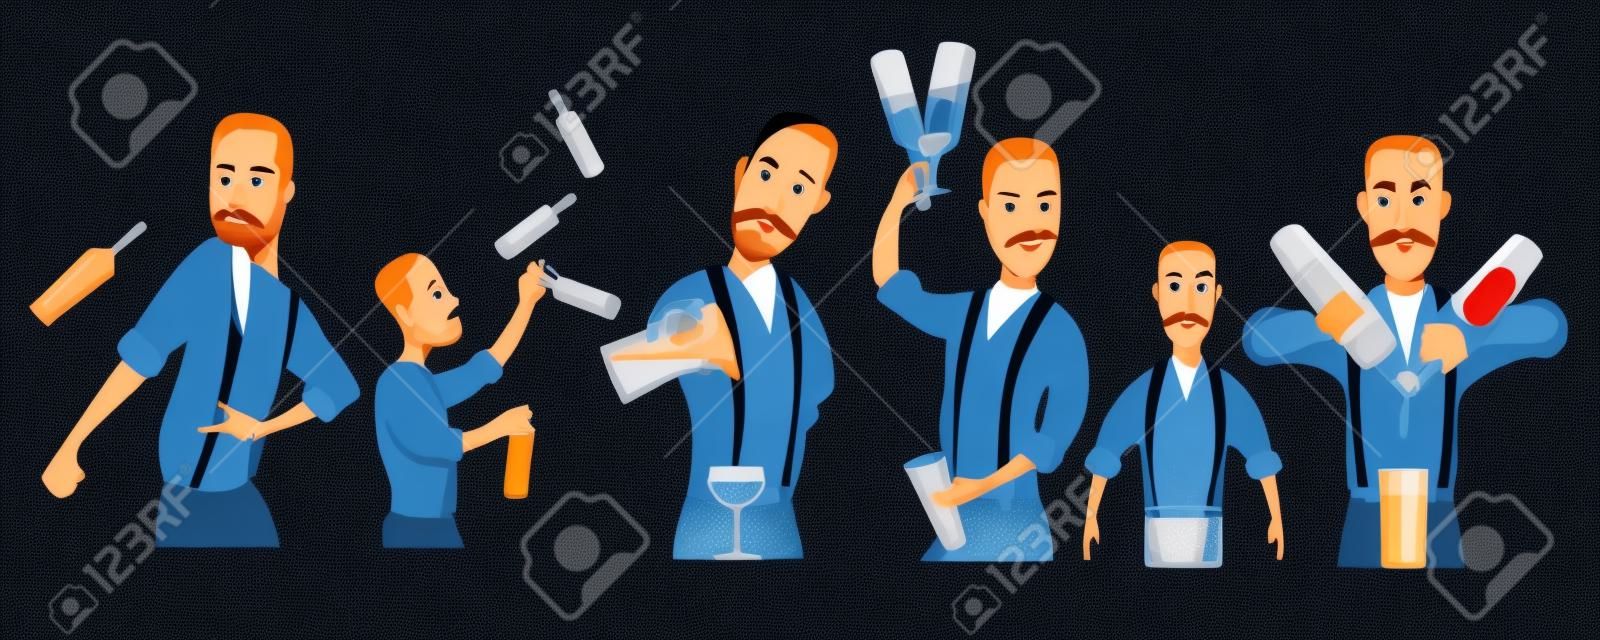 set of bartenders illustration